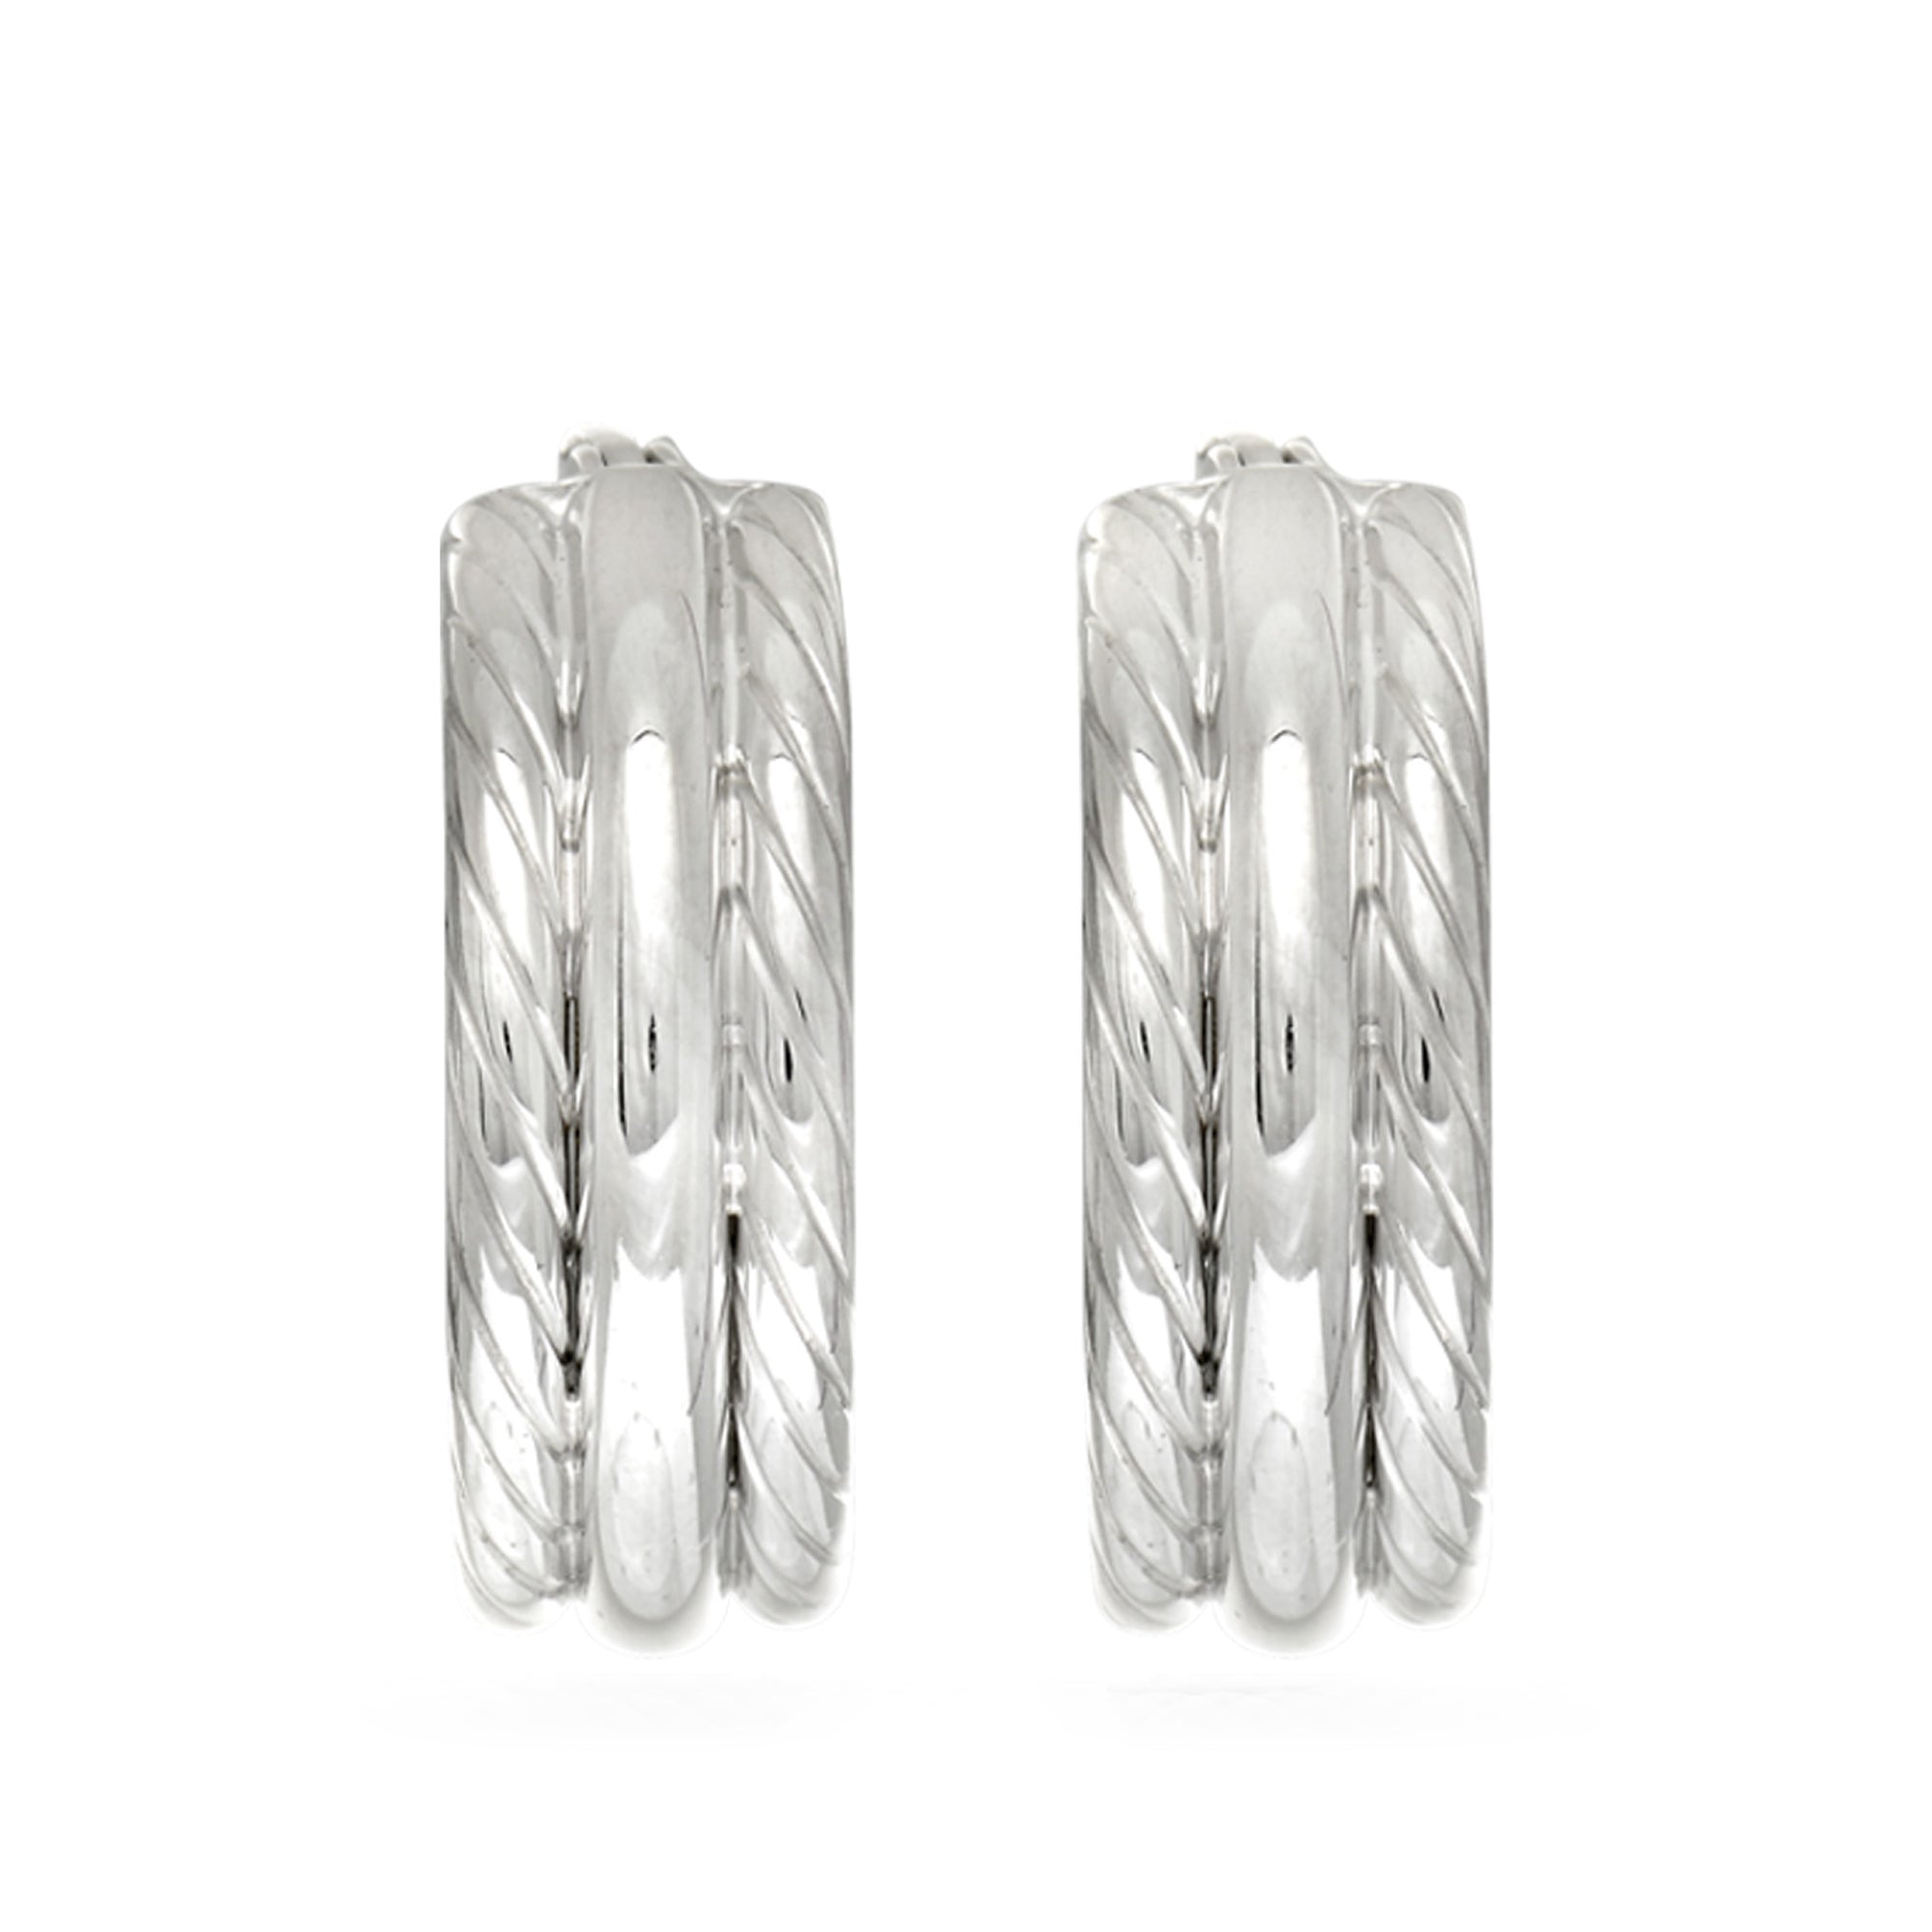 Sterlingsølv Rhodiumbelagt Twisted Tube runde bøjle øreringe, diameter 15 mm fine designersmykker til mænd og kvinder